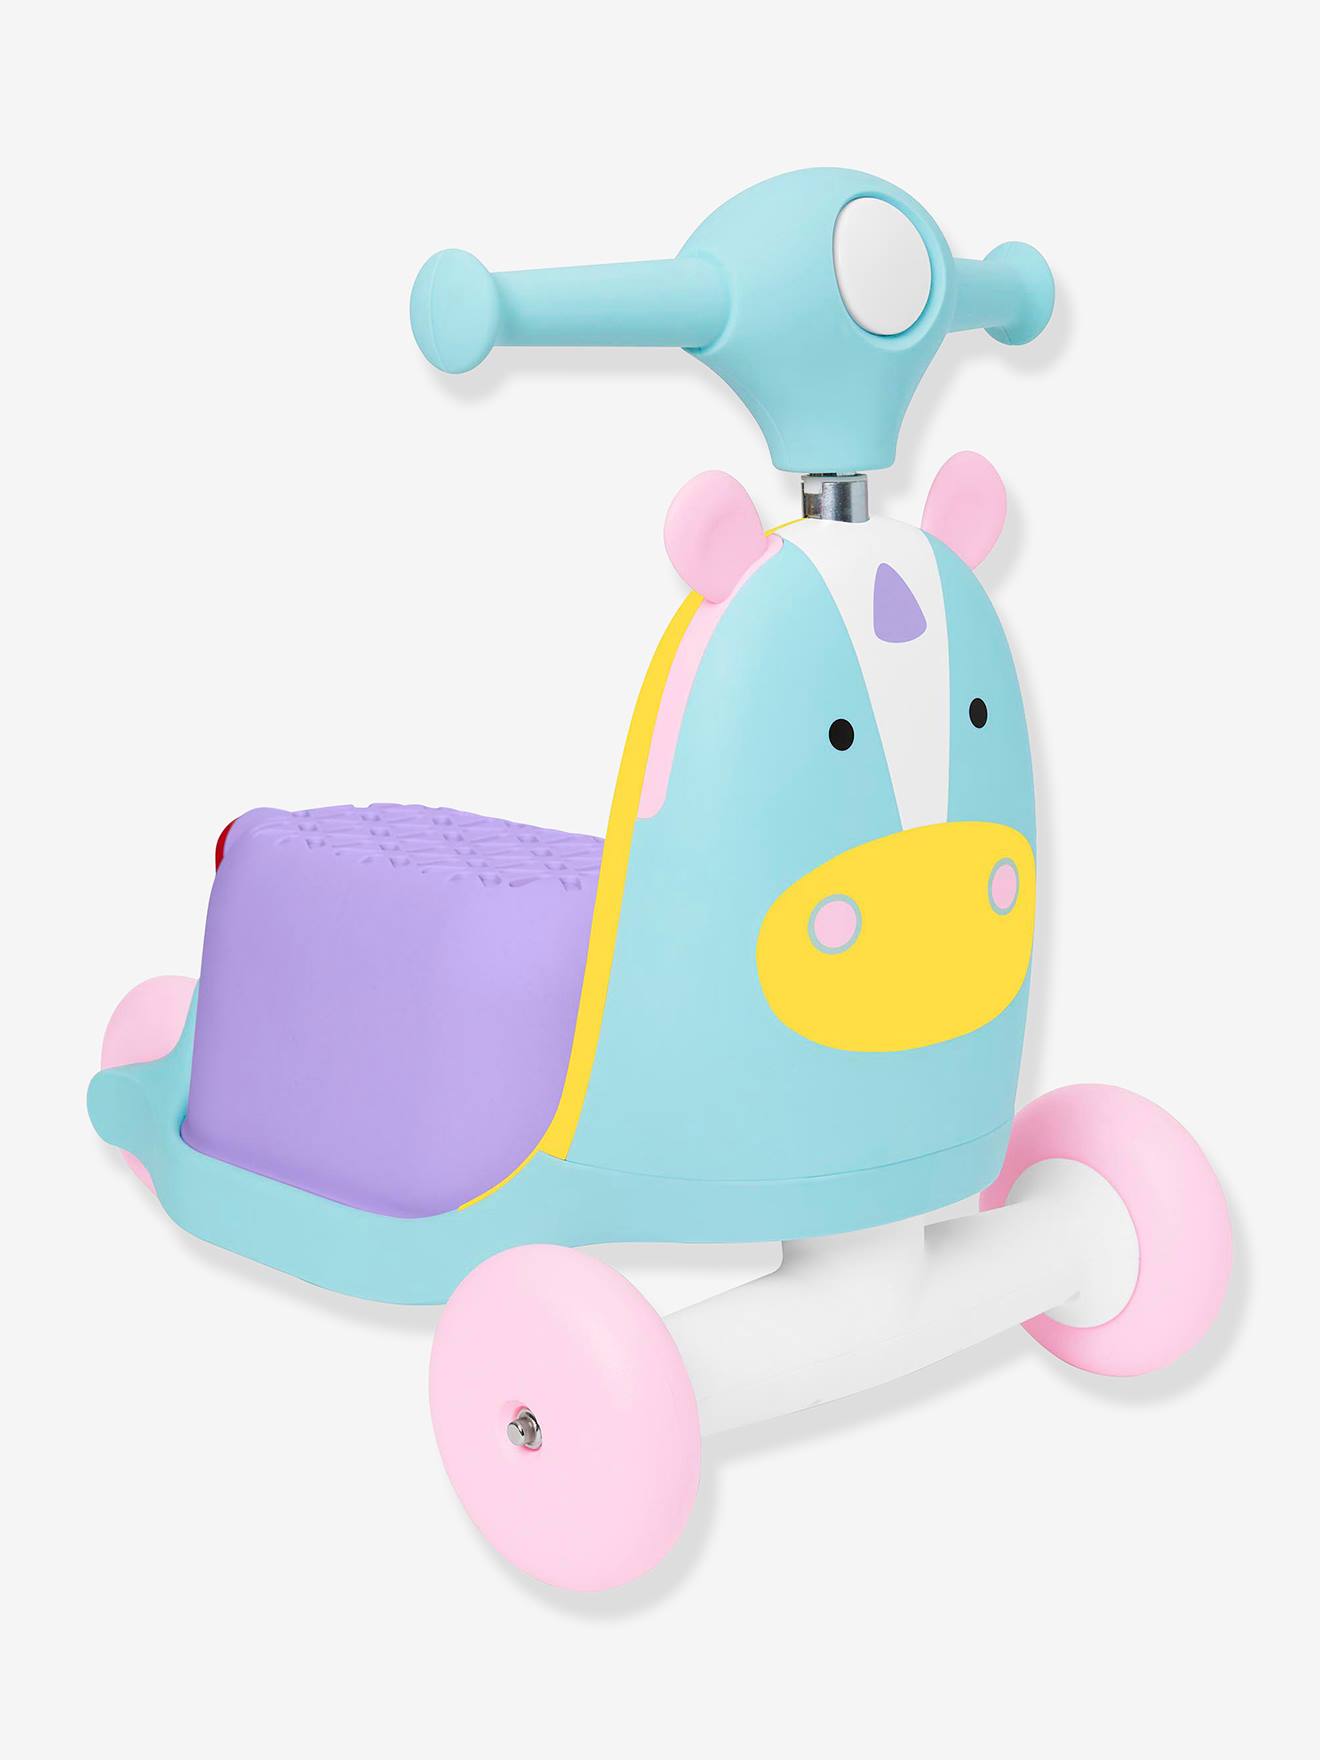 3-in-1 Developmental Ride on Fox Toy, by SKIP HOP Zoo multicoloured